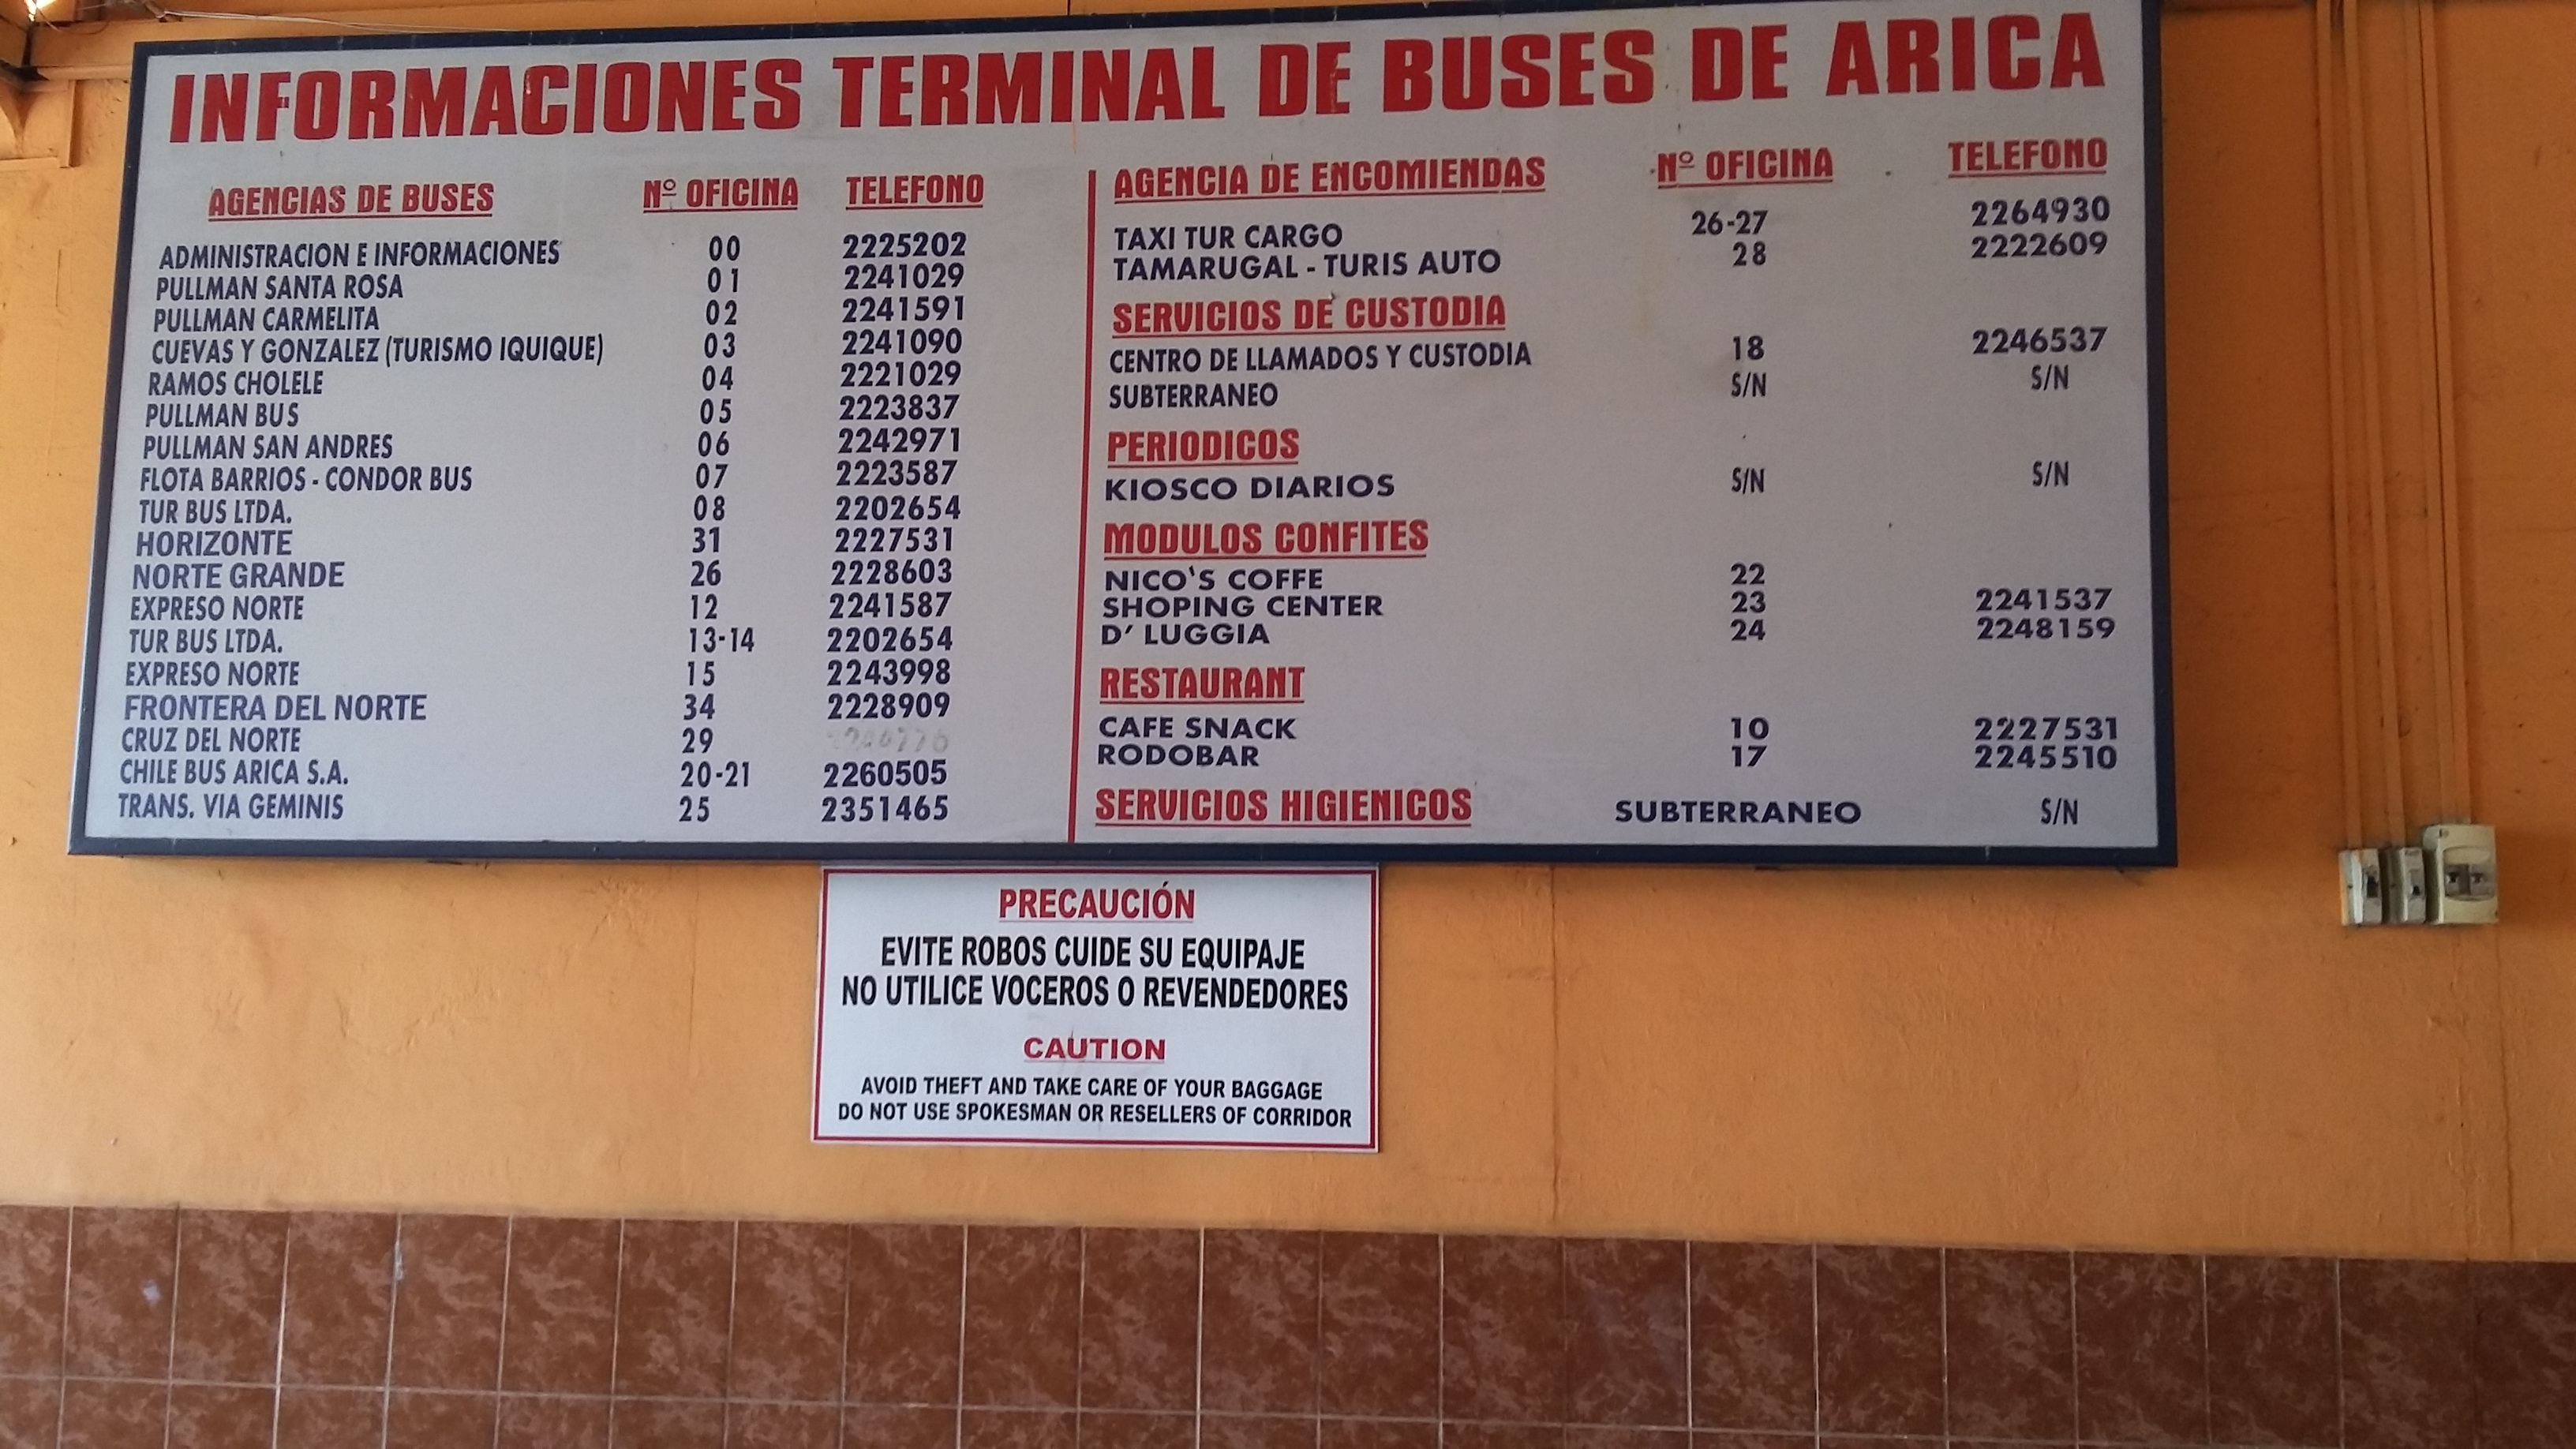 8. Compañías de autobuses disponibles en el Terminal